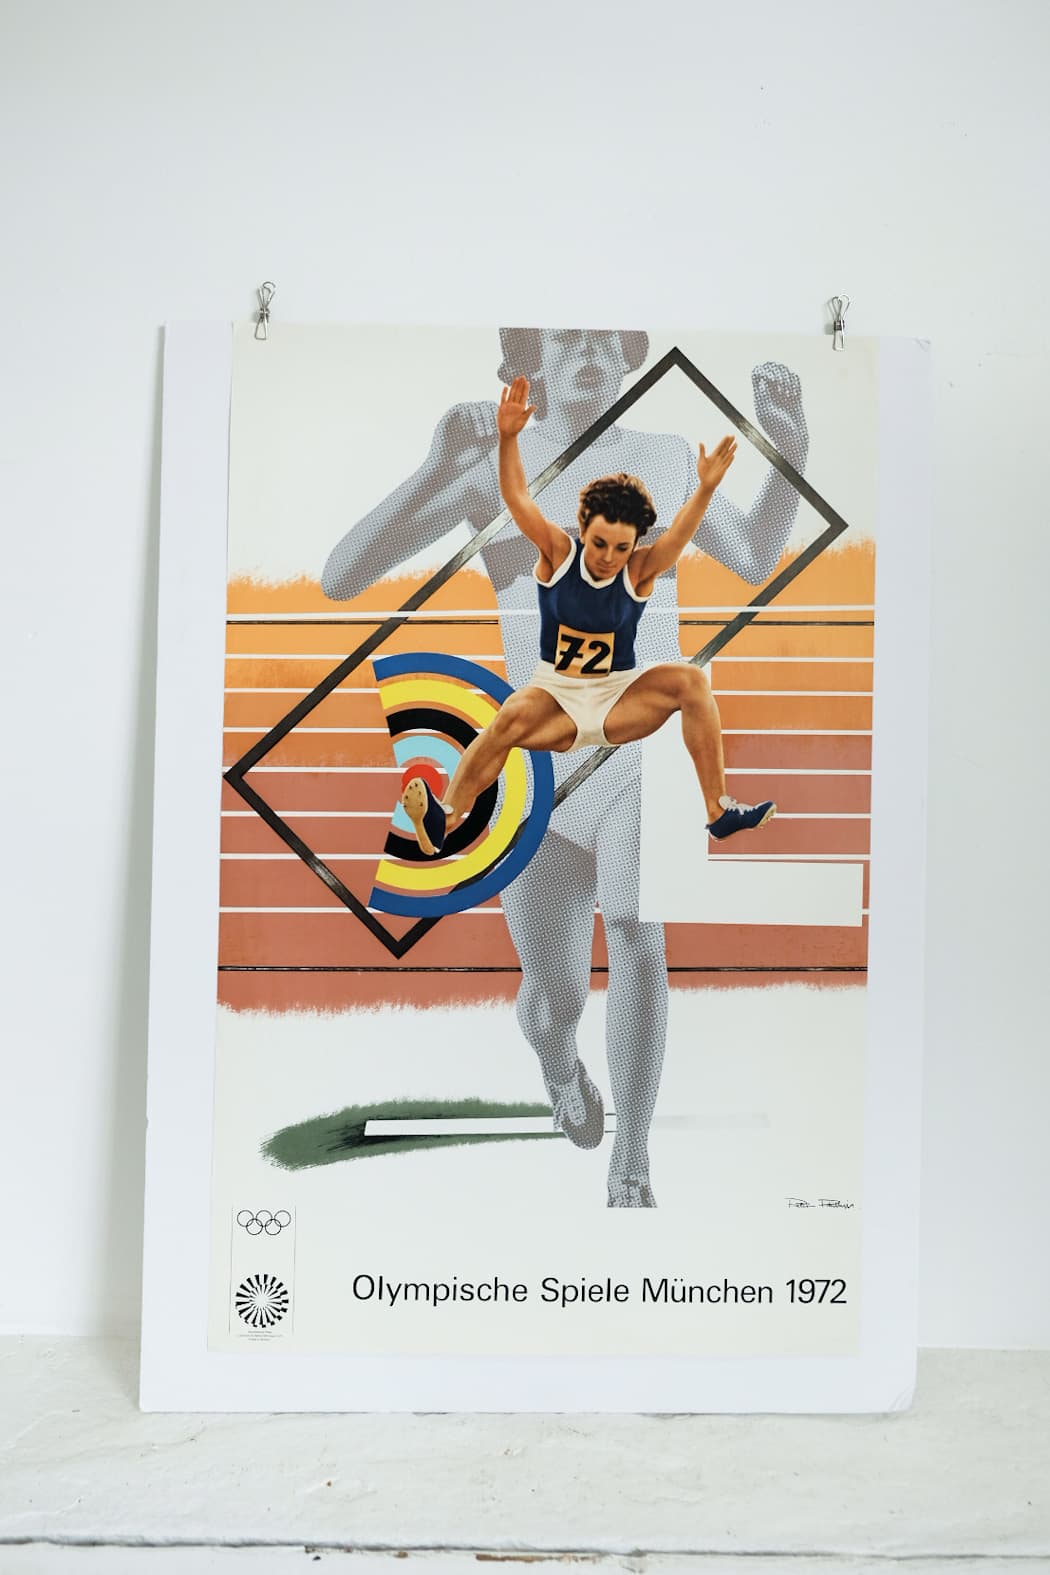 Olympische Spiele Munchen 1972